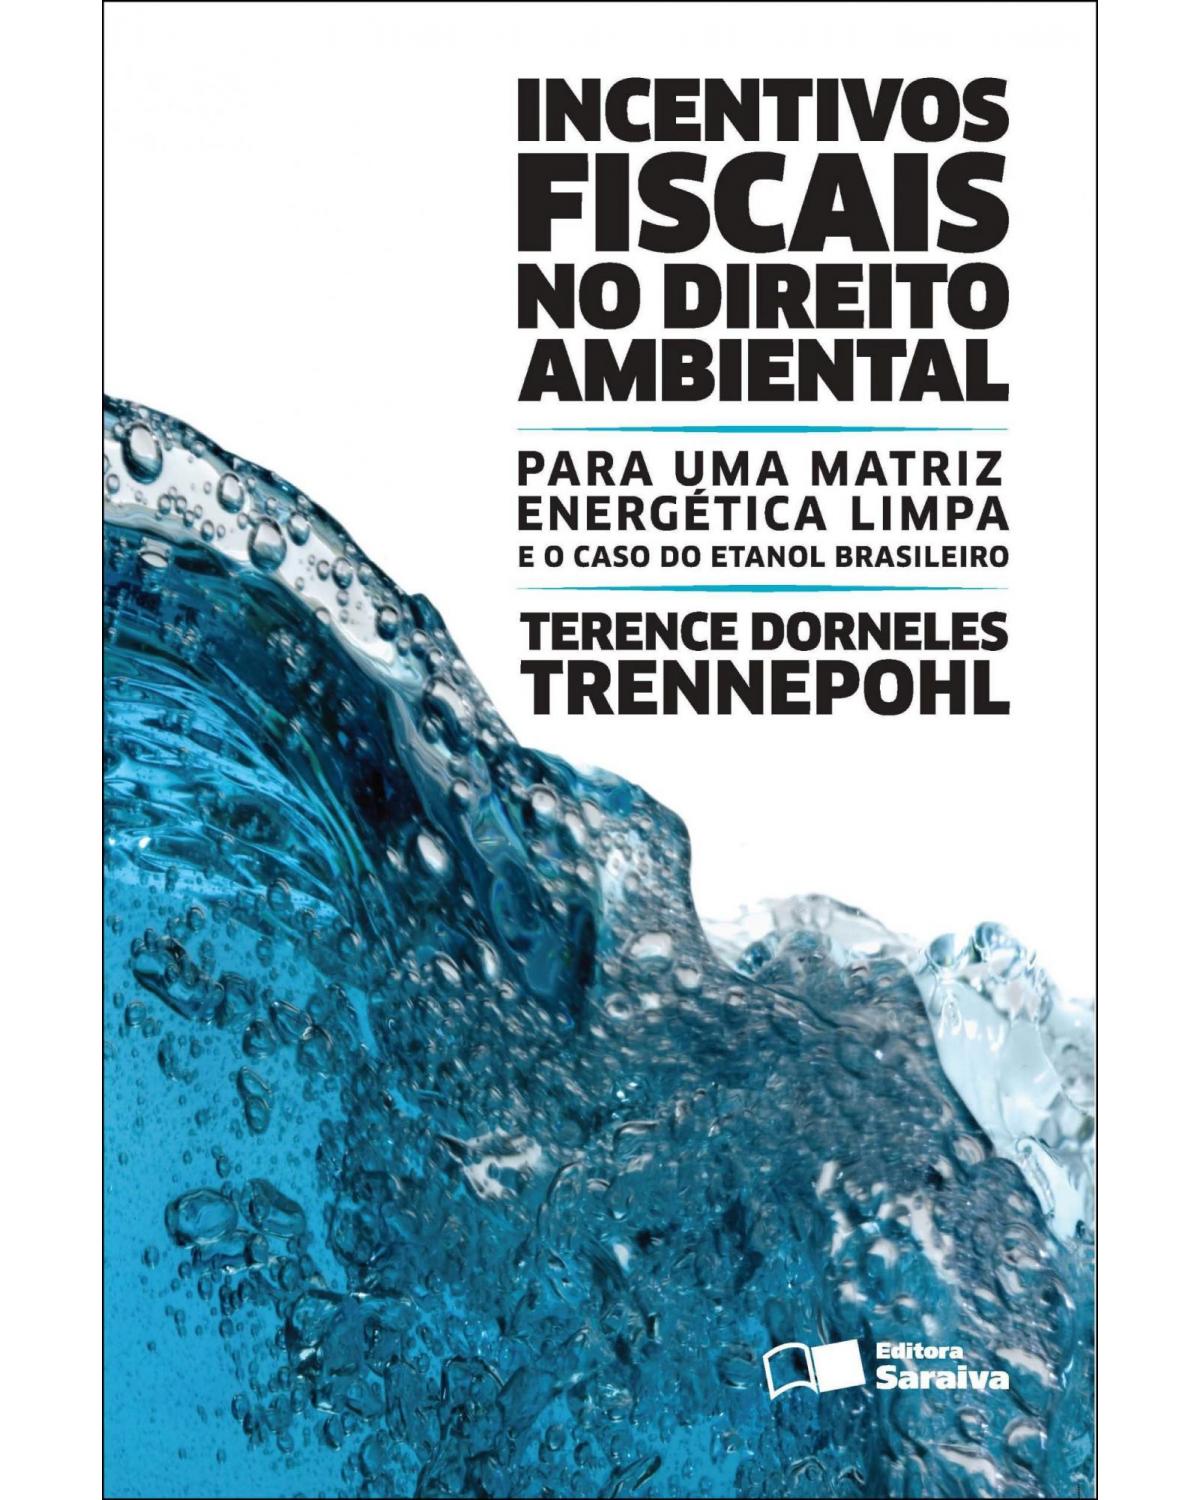 Incentivos fiscais no direito ambiental - para uma matriz energética limpa e o caso do etanol brasileiro - 2ª Edição | 2013